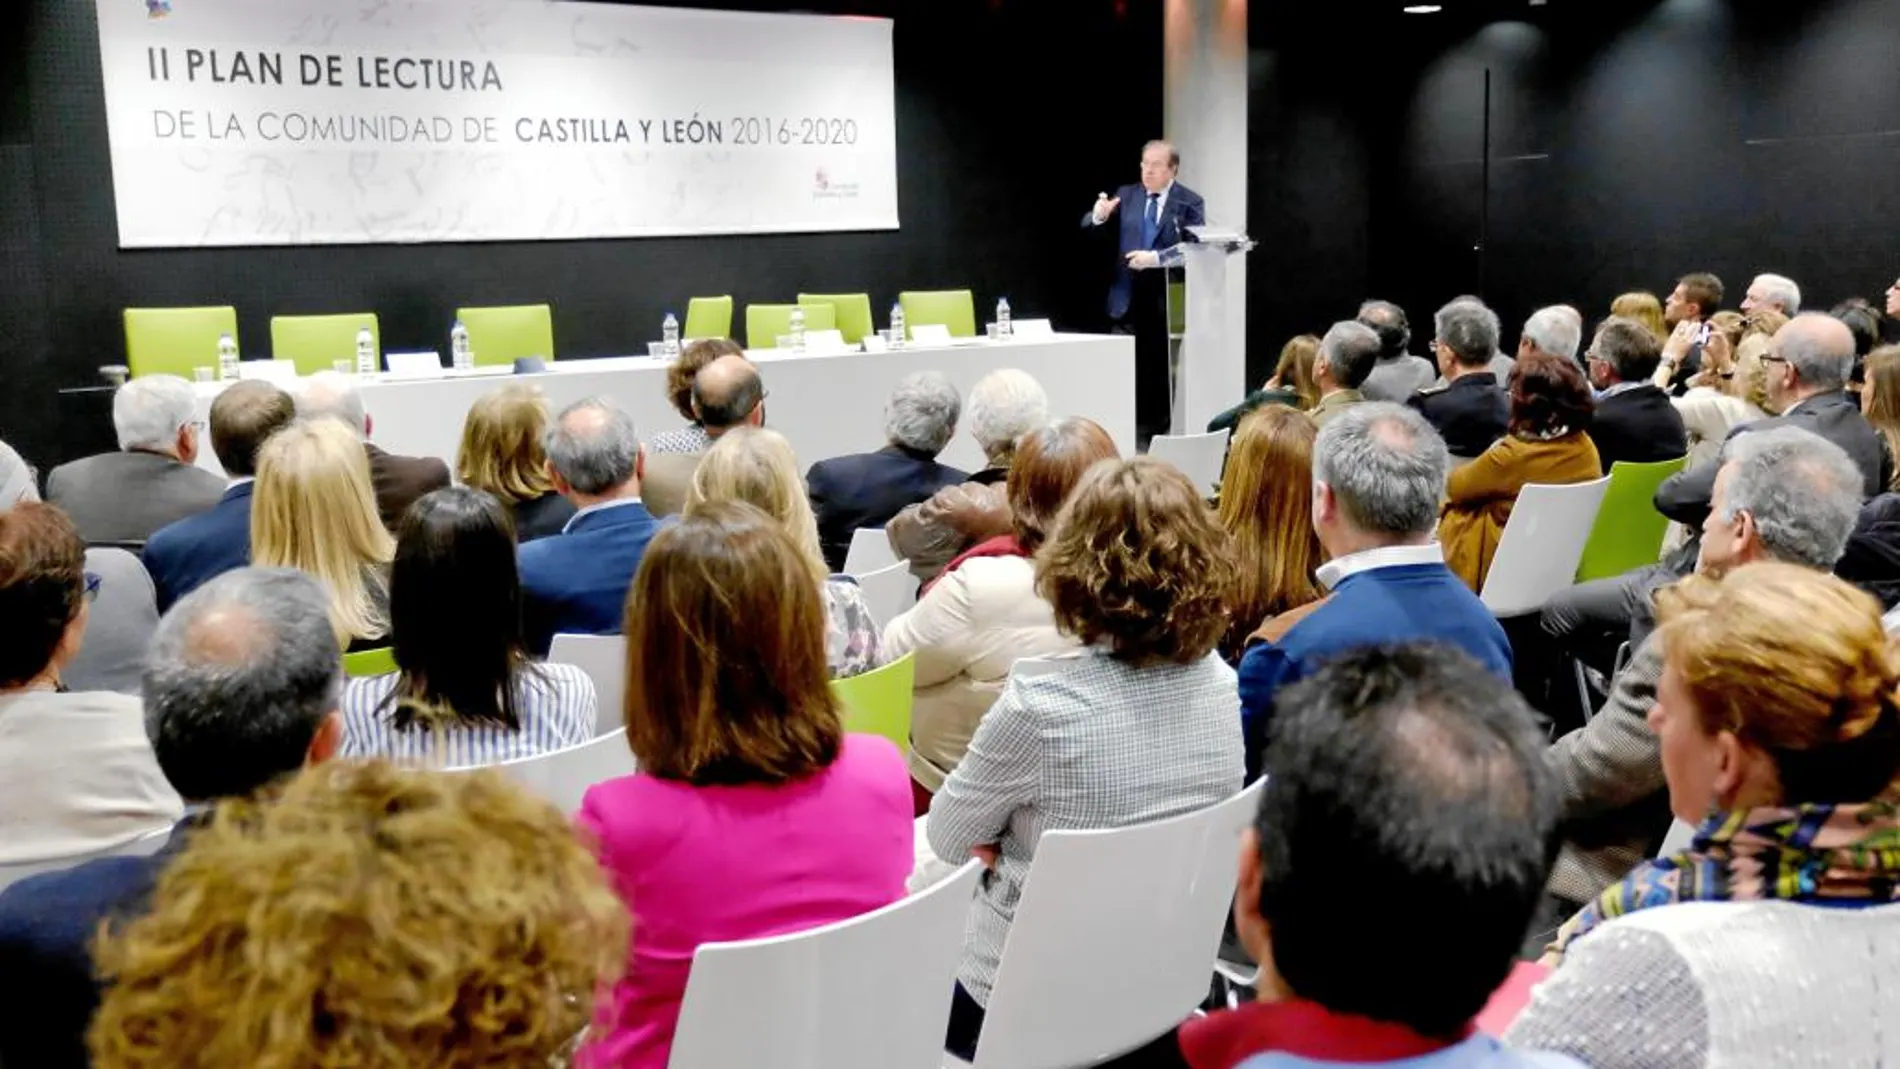 El presidente Herrera presenta el II Plan de Lectura en Burgos